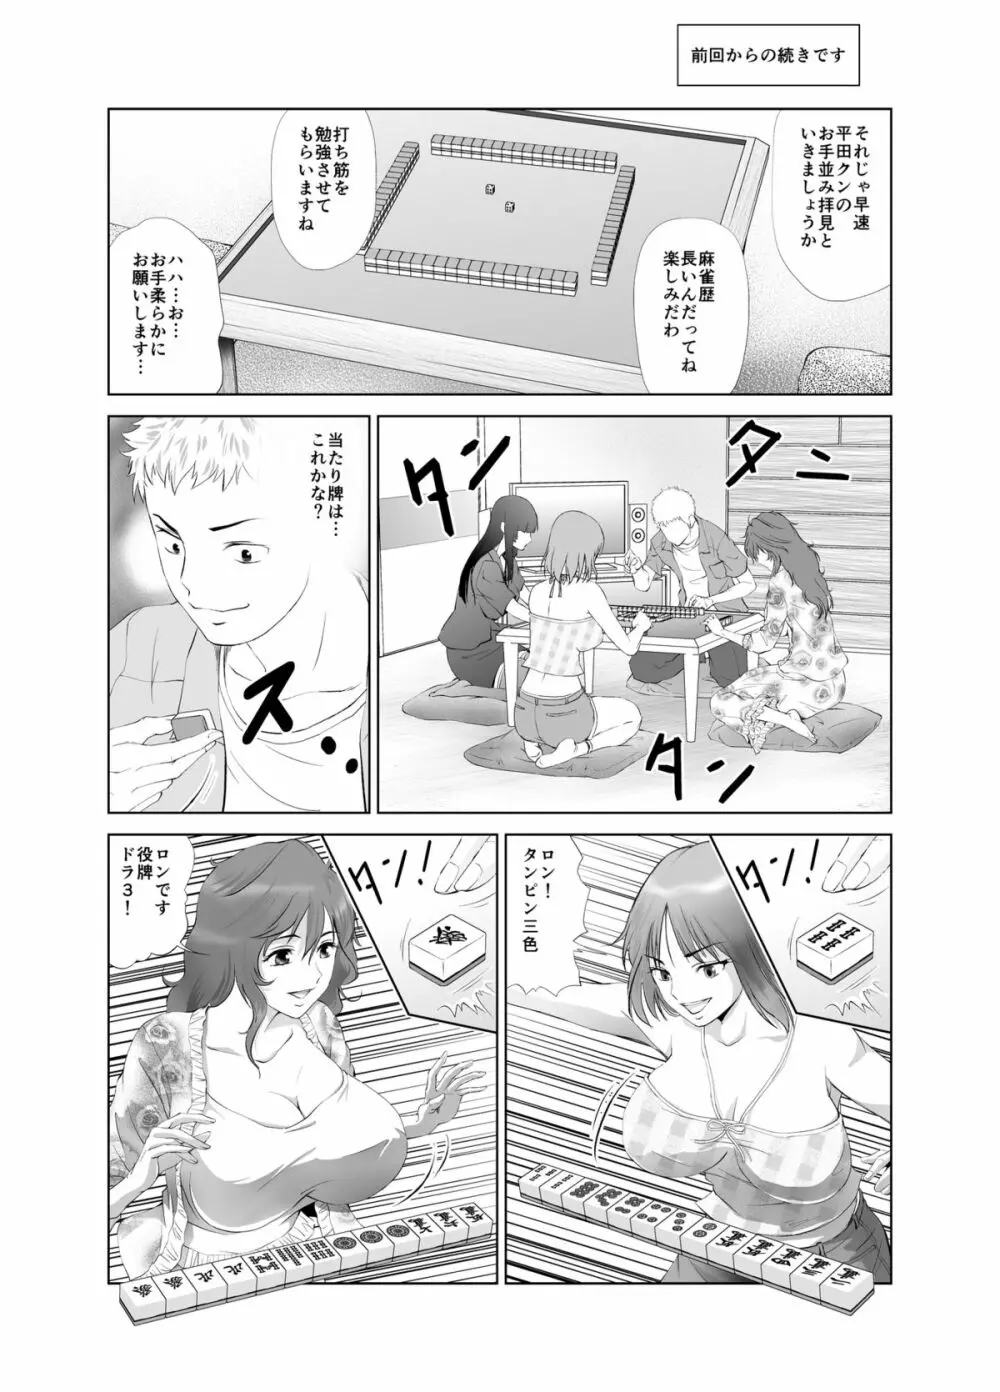 脱衣麻雀～漫画編～【完成版】 Page.7